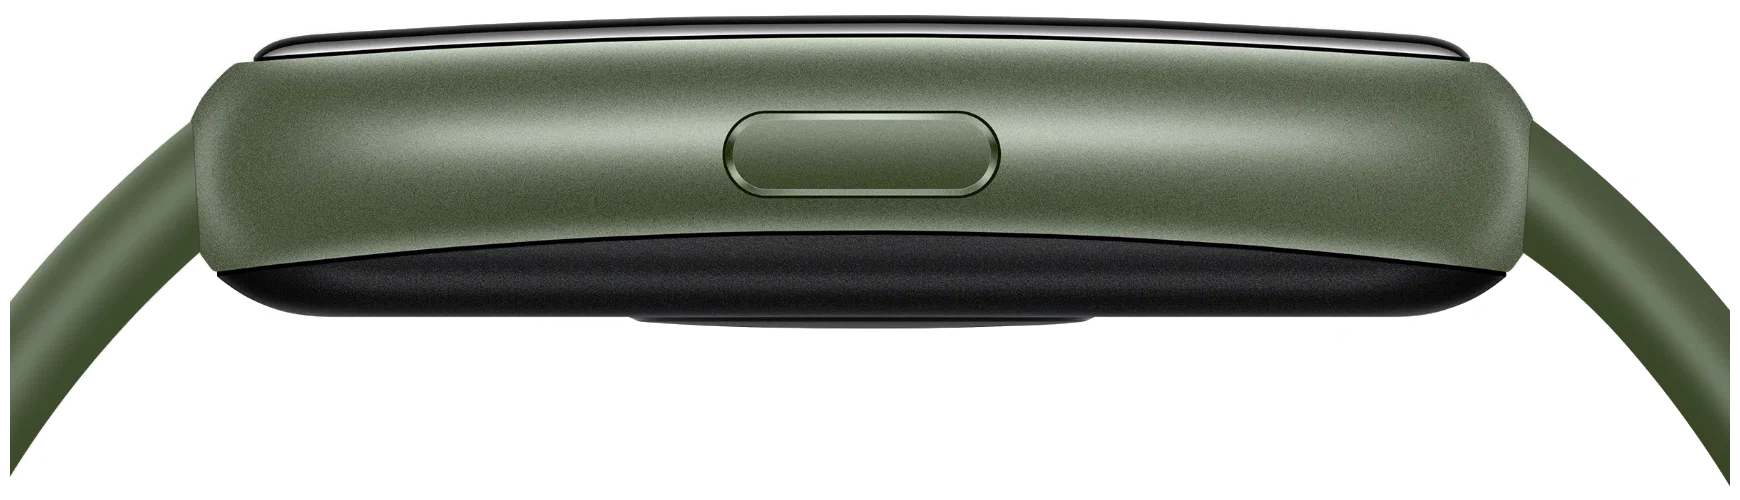 Фитнес-браслет Huawei Band 7 Зеленый в Челябинске купить по недорогим ценам с доставкой